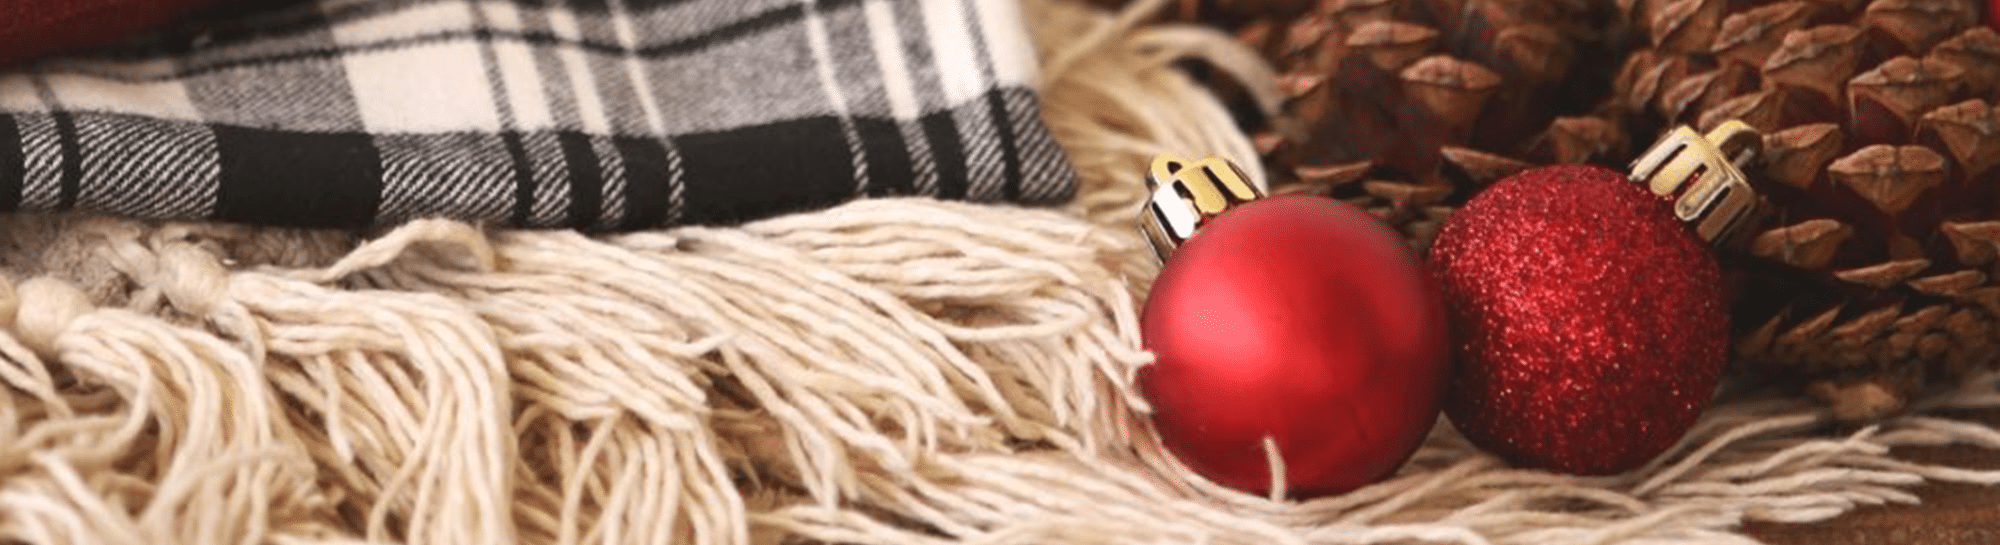 Weihnachtsgeschäft E-Commerce – 19 ultimative Tipps für die Weihnachtszeit